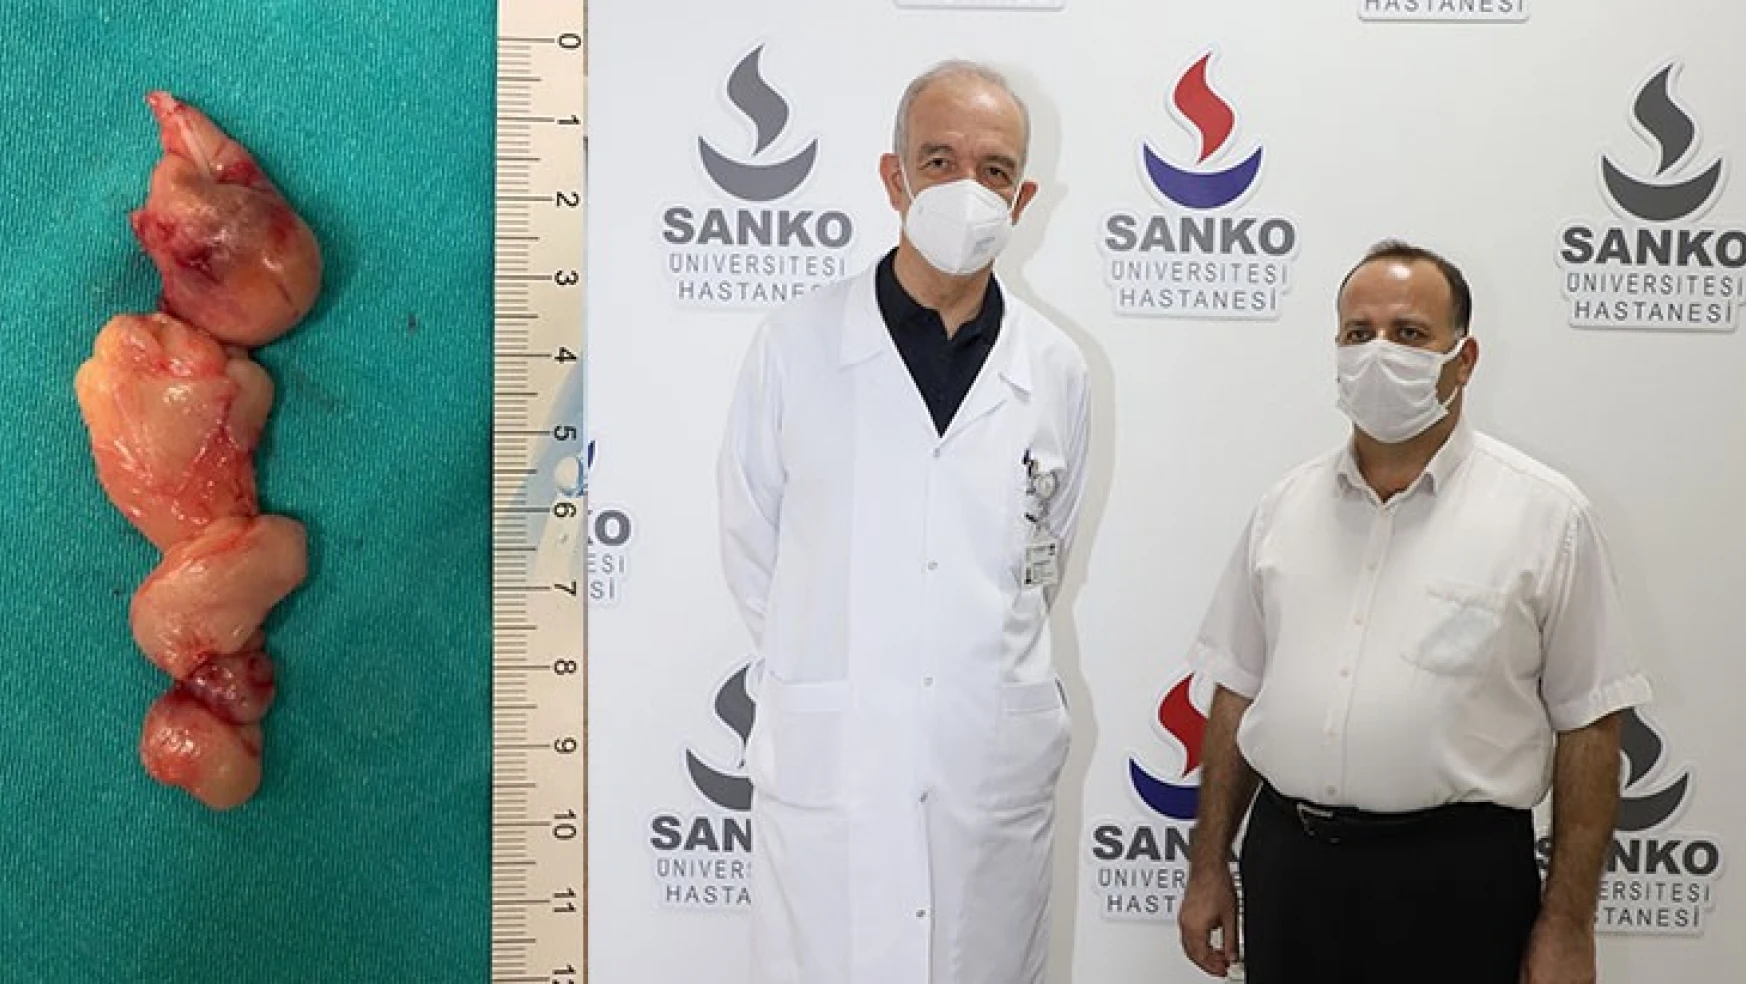 SANKO Üniversitesi Hastanesi'nde başarılı ameliyat